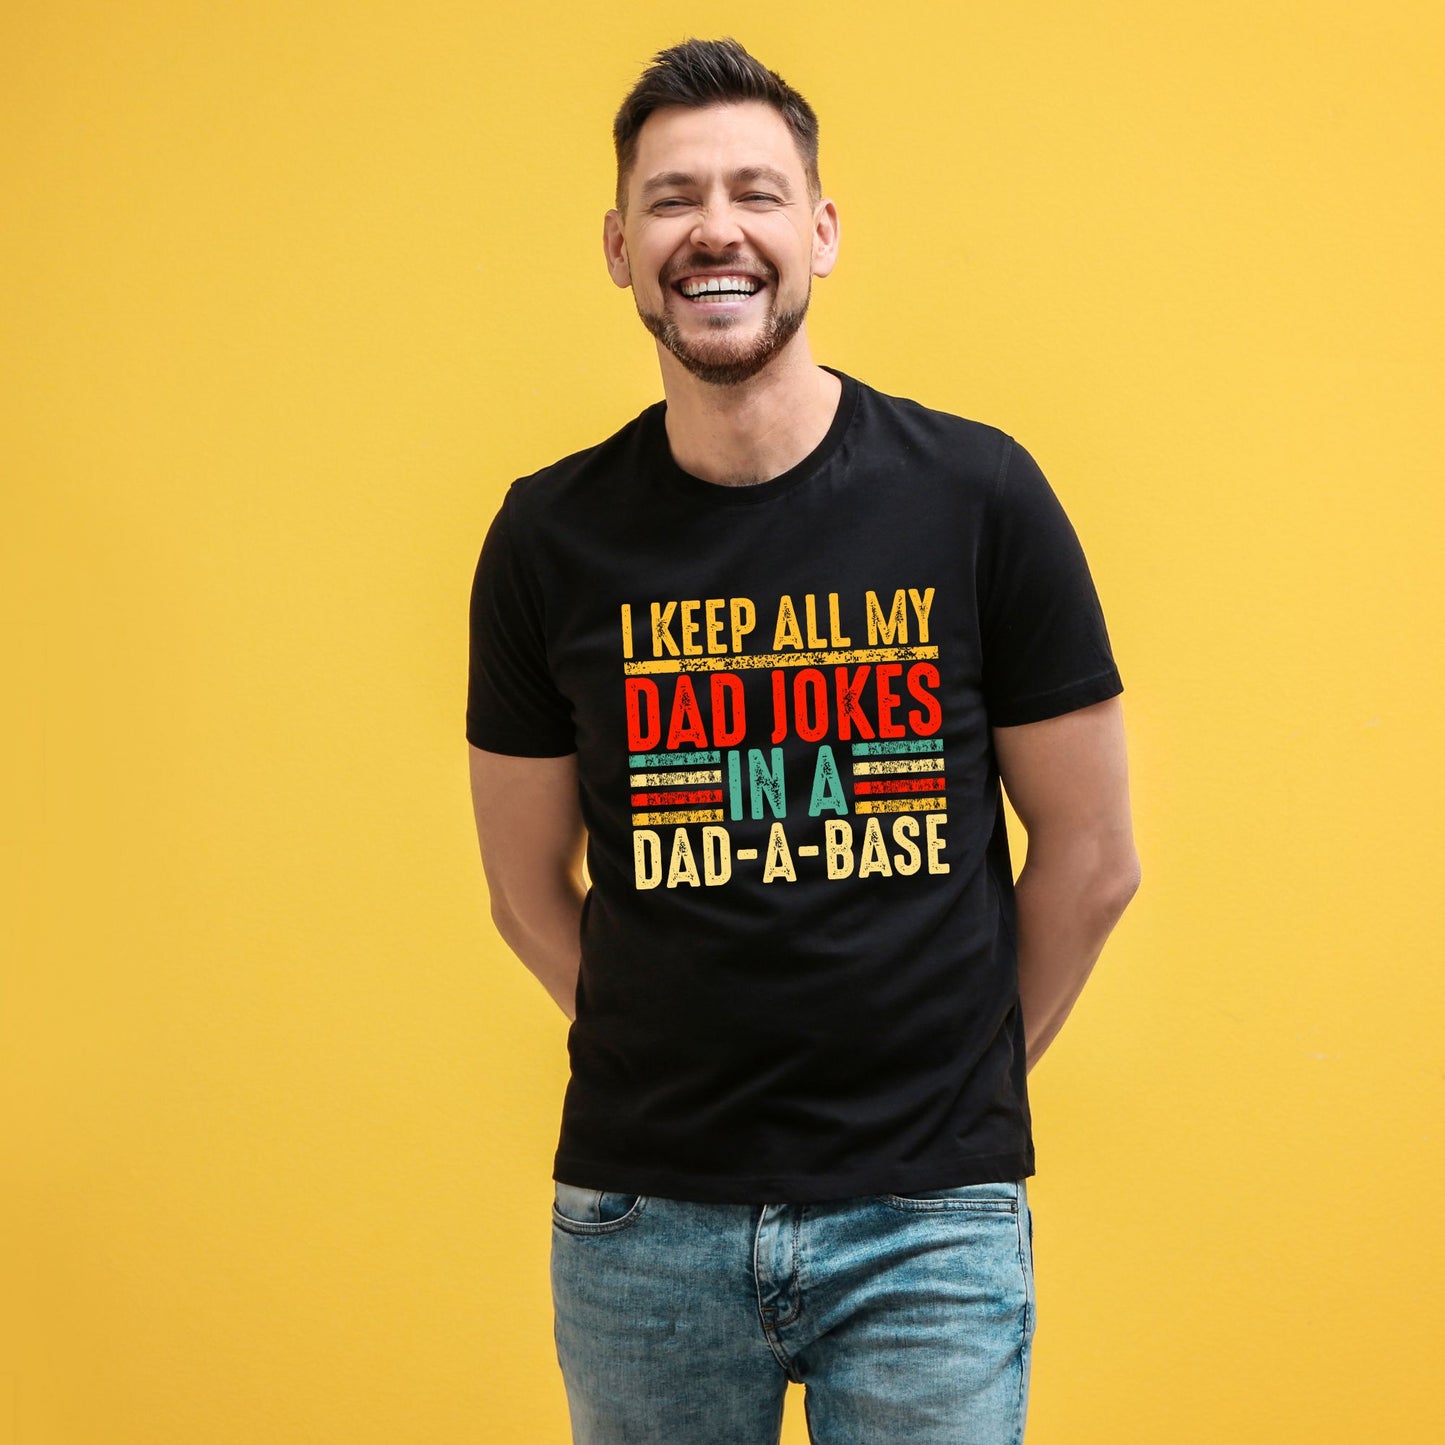 "Dad-A-Base Jokes" Funny Dad Shirt